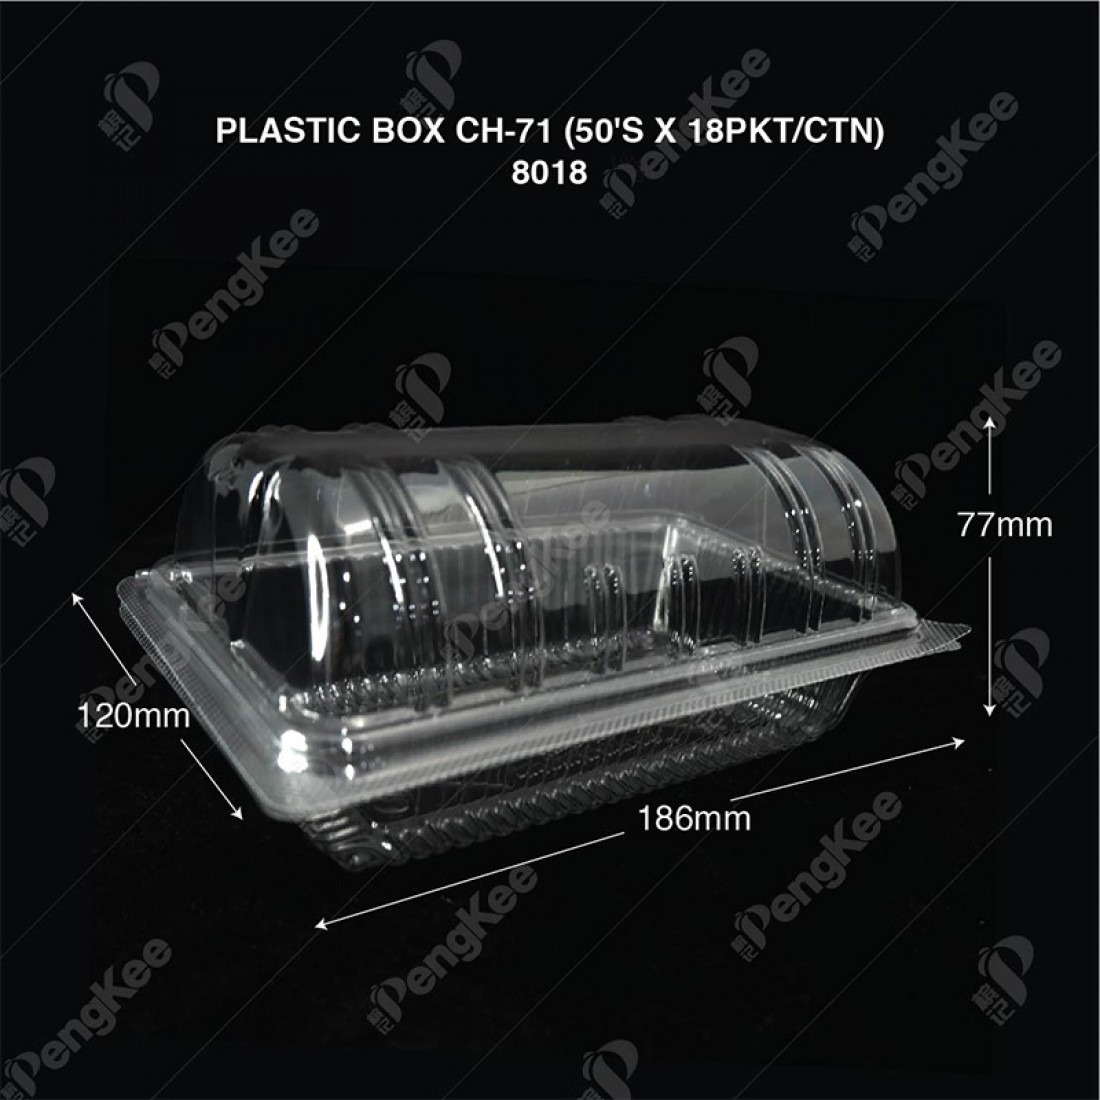 PLASTIC BOX CH-71 (50'S)